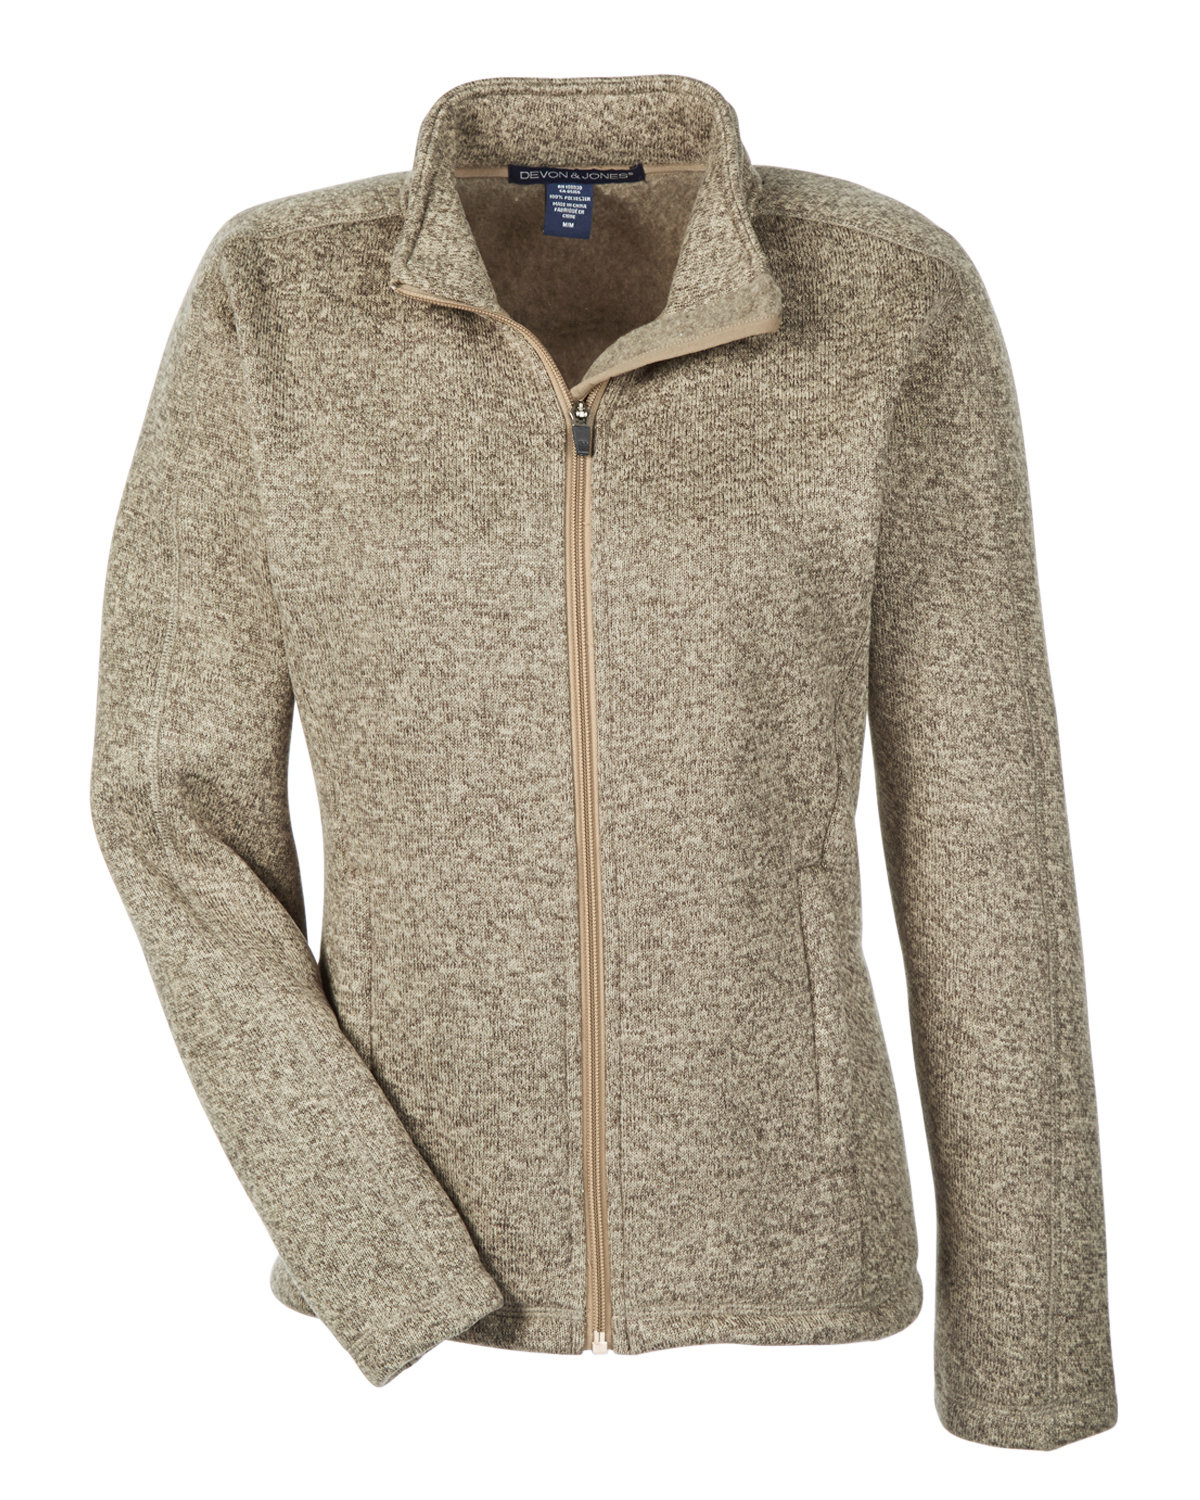 Devon & Jones Ladies' Bristol Full-Zip Sweater Fleece Jacket | alphabroder